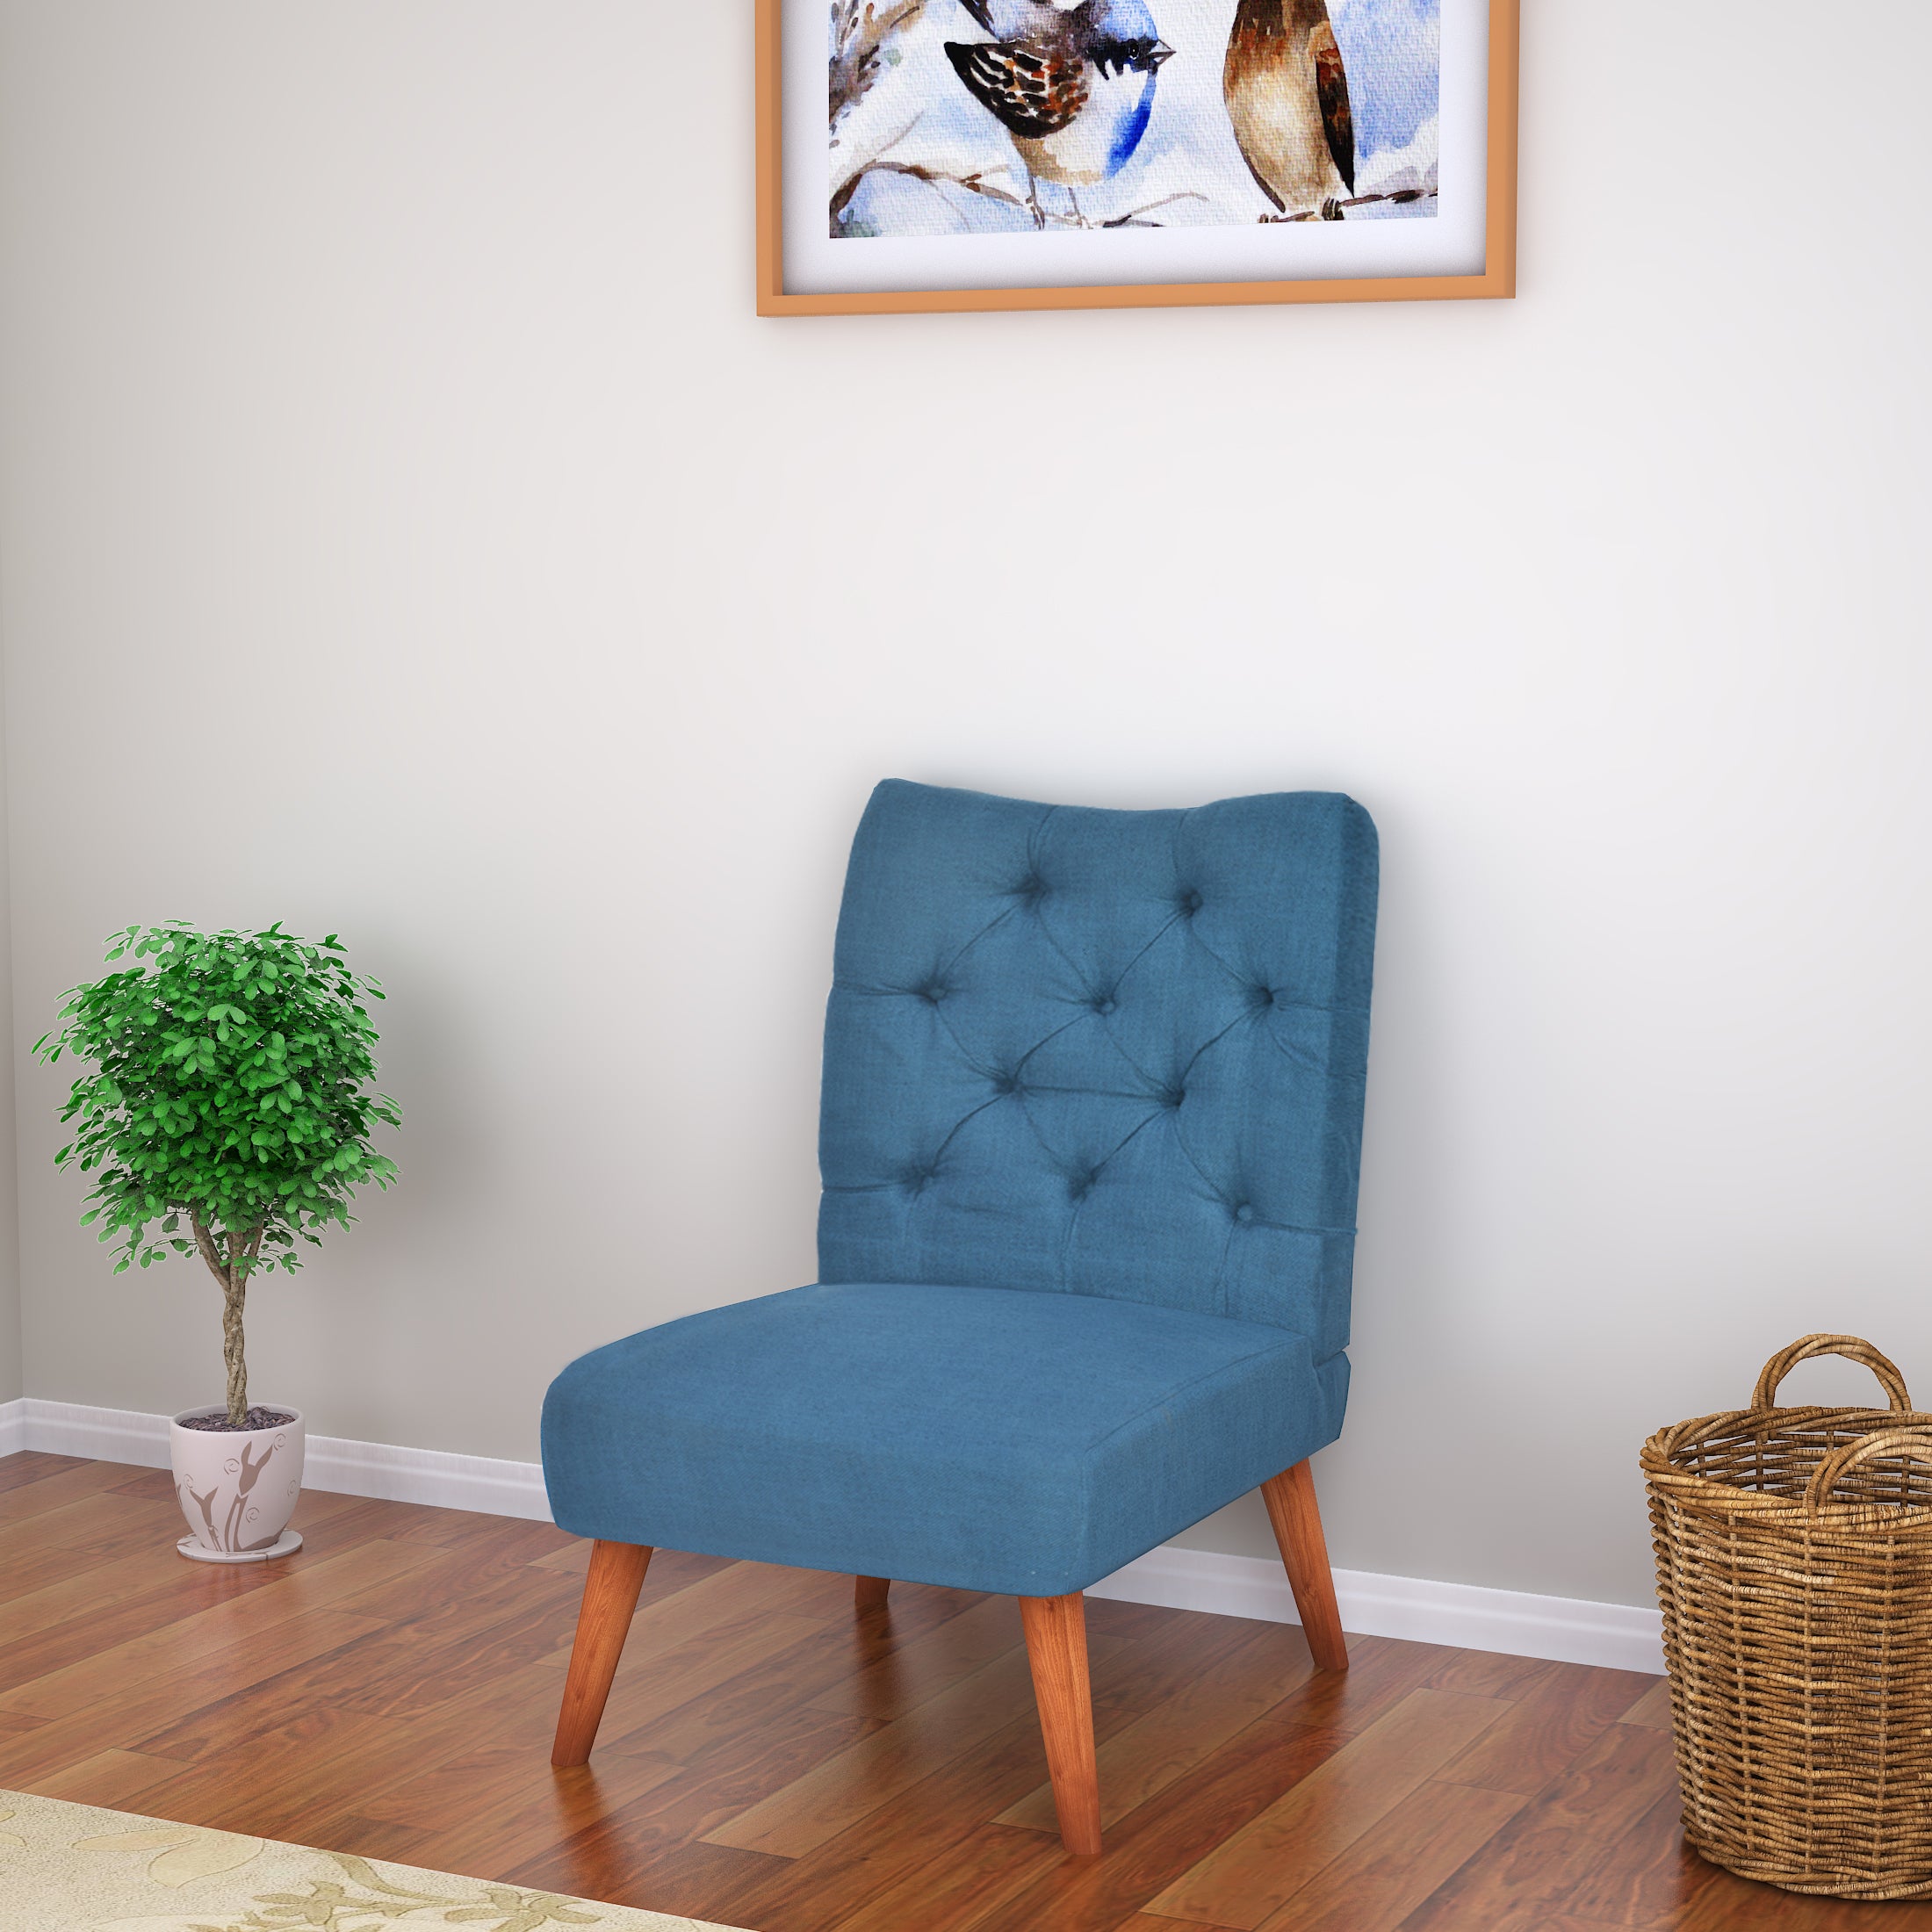 Cerro Arm Chair (Royal Blue)